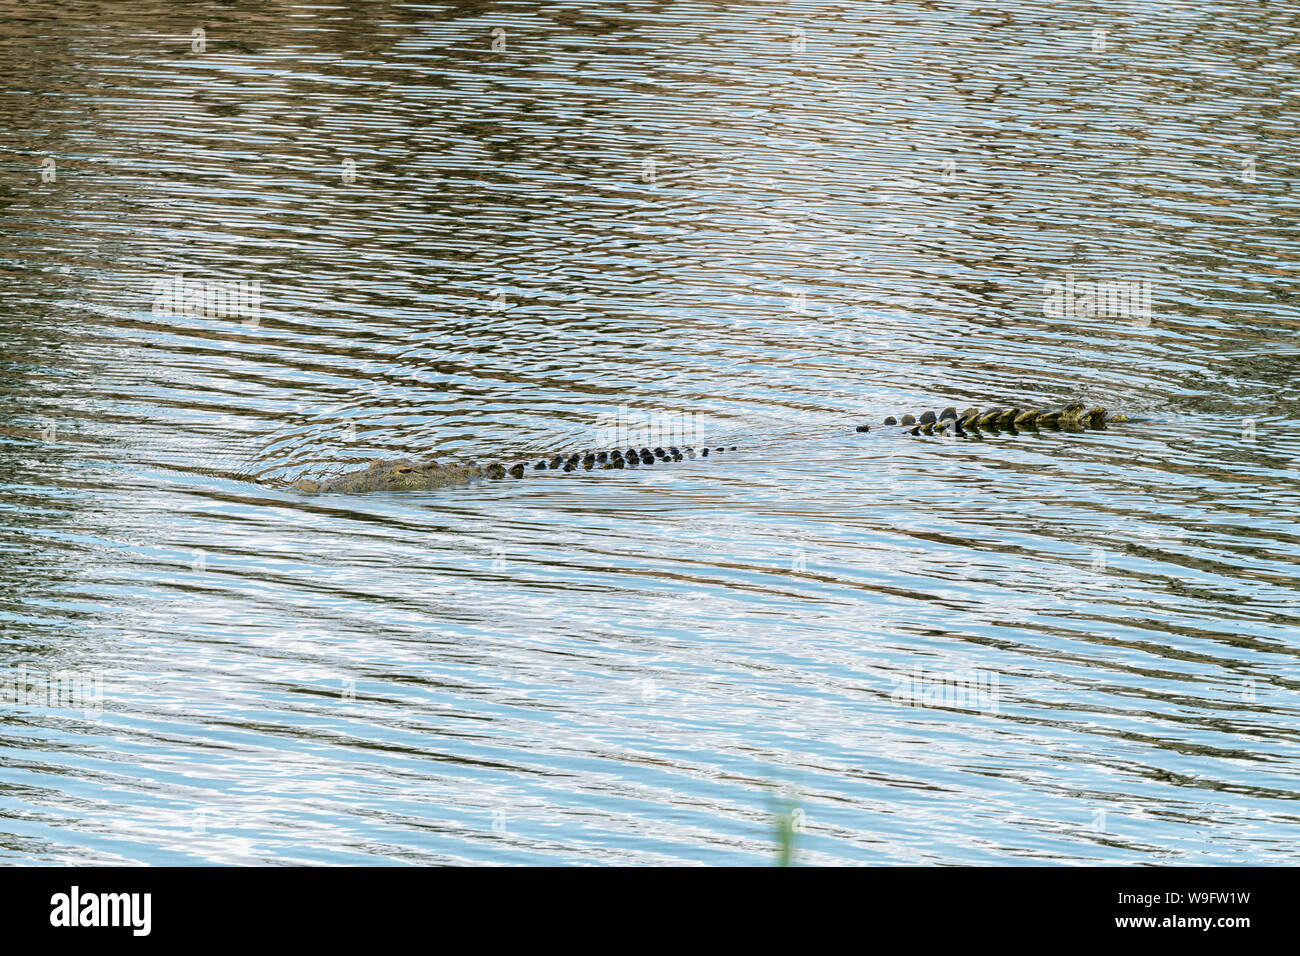 Eine Nil Krokodil, Crocodylus niloticus, teilweise in Wasser untergetaucht Stockfoto